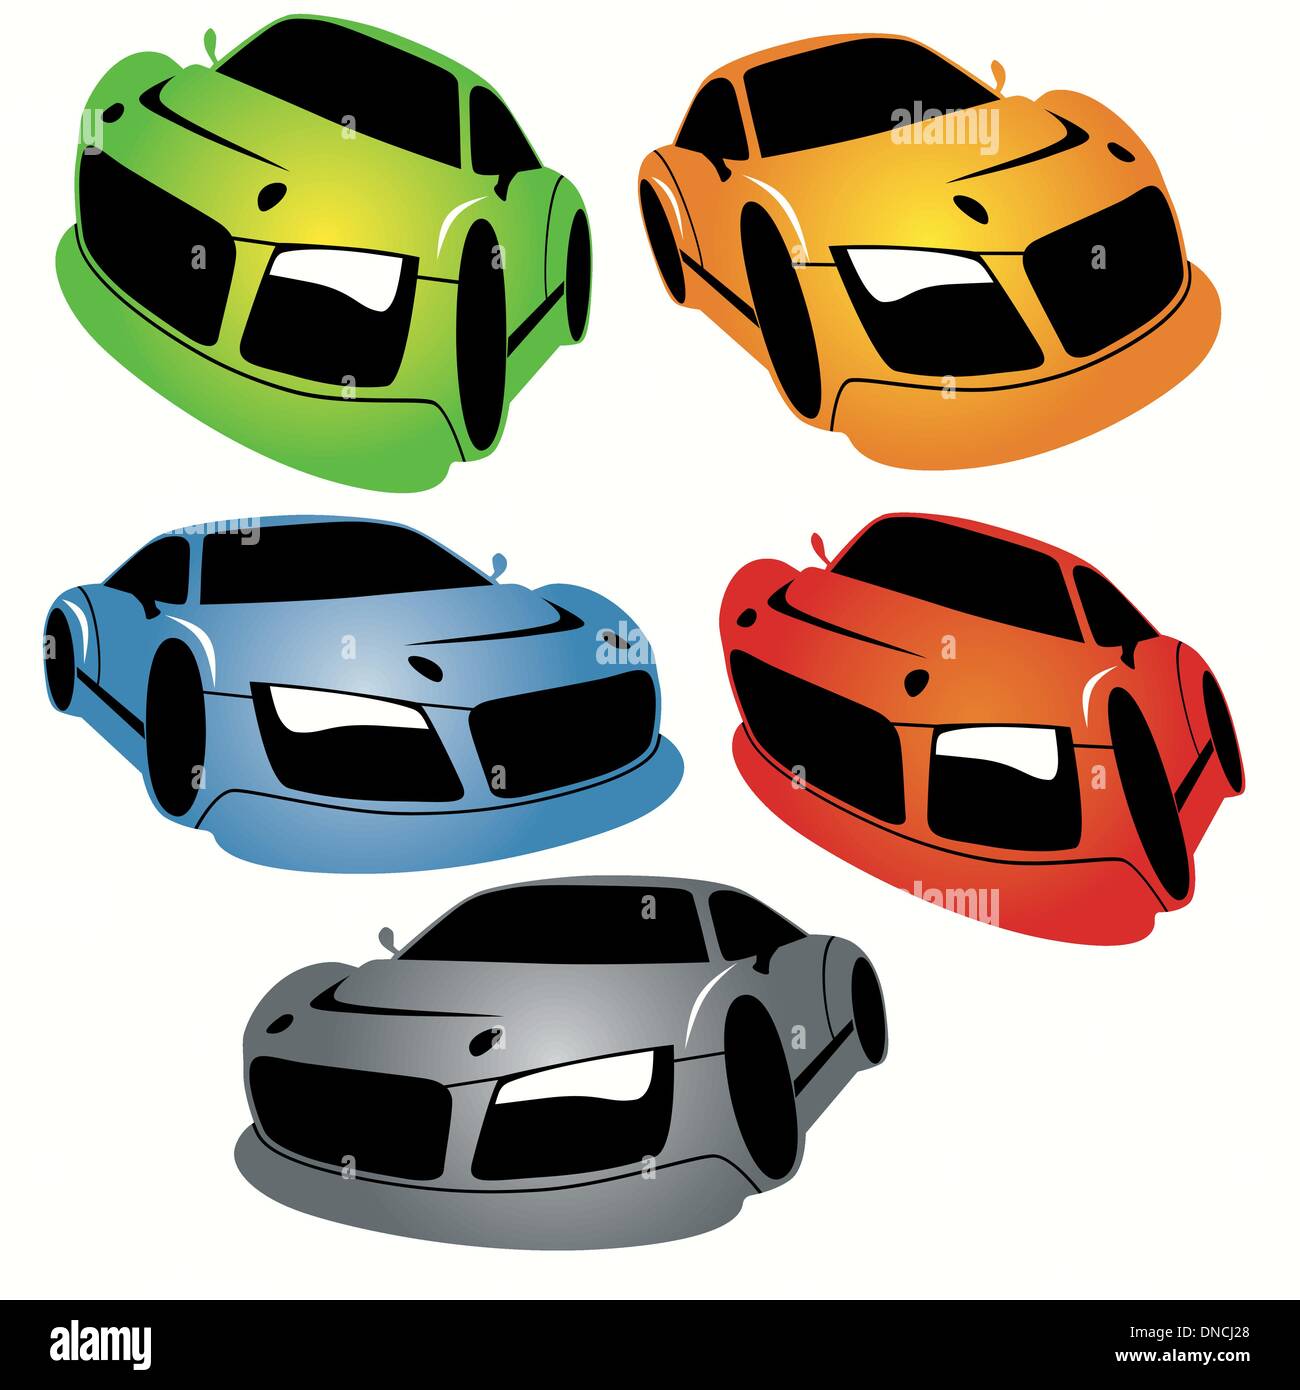 Cartoon Racing Cars Set Stock Vector Image & Art - Alamy